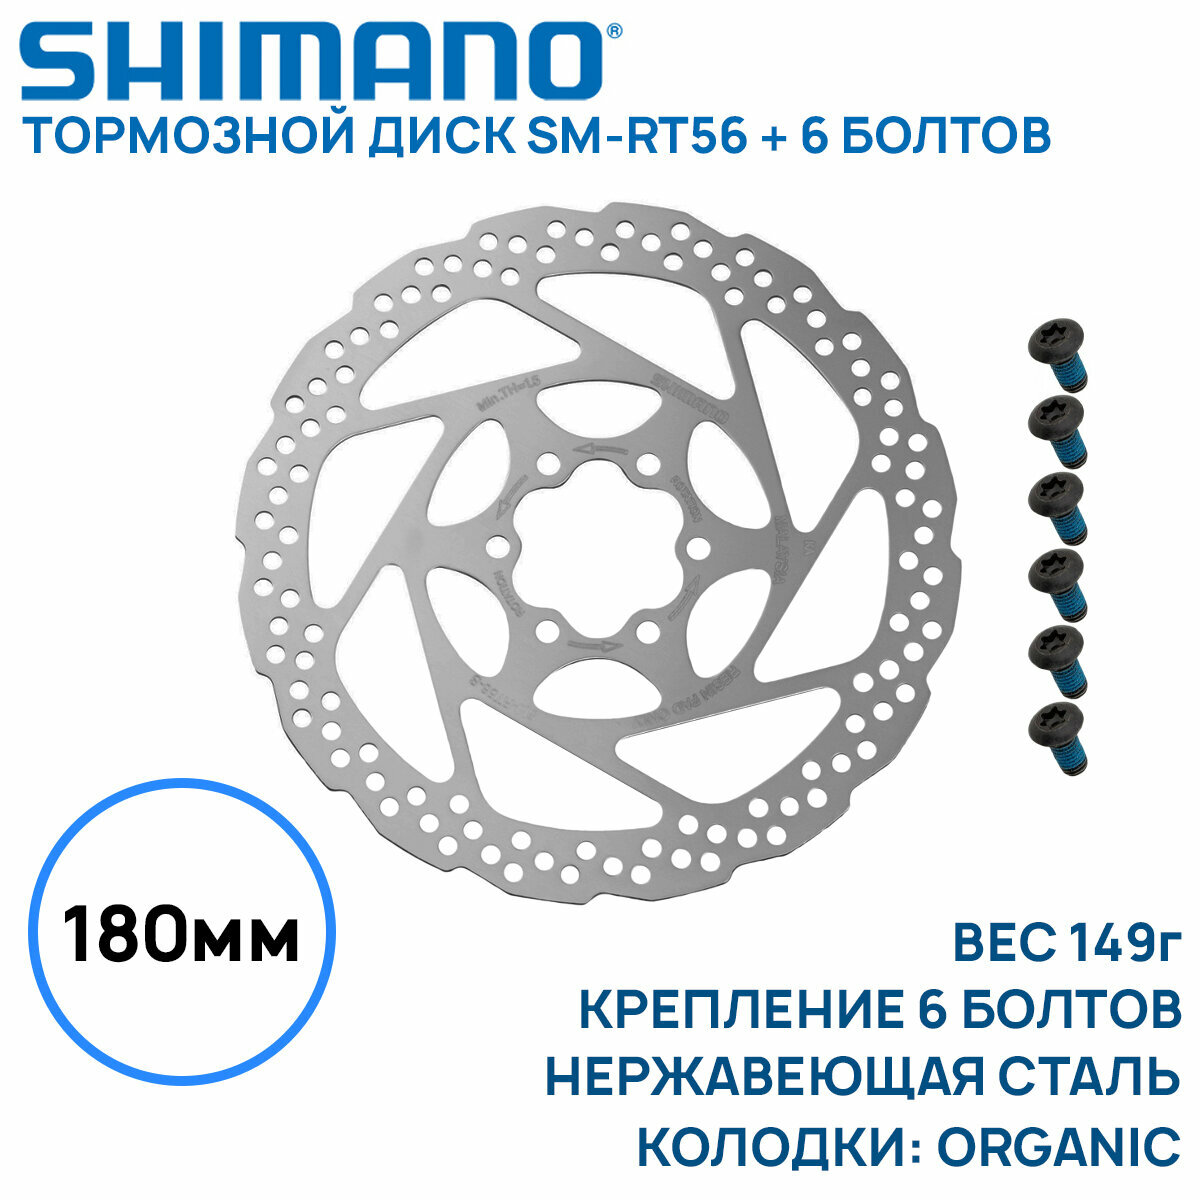 Тормозной диск Shimano SM-RT56, 180мм, крепление 6 болтов, нержавеющая сталь, только для пластиковых колодок, без коробки (OEM)